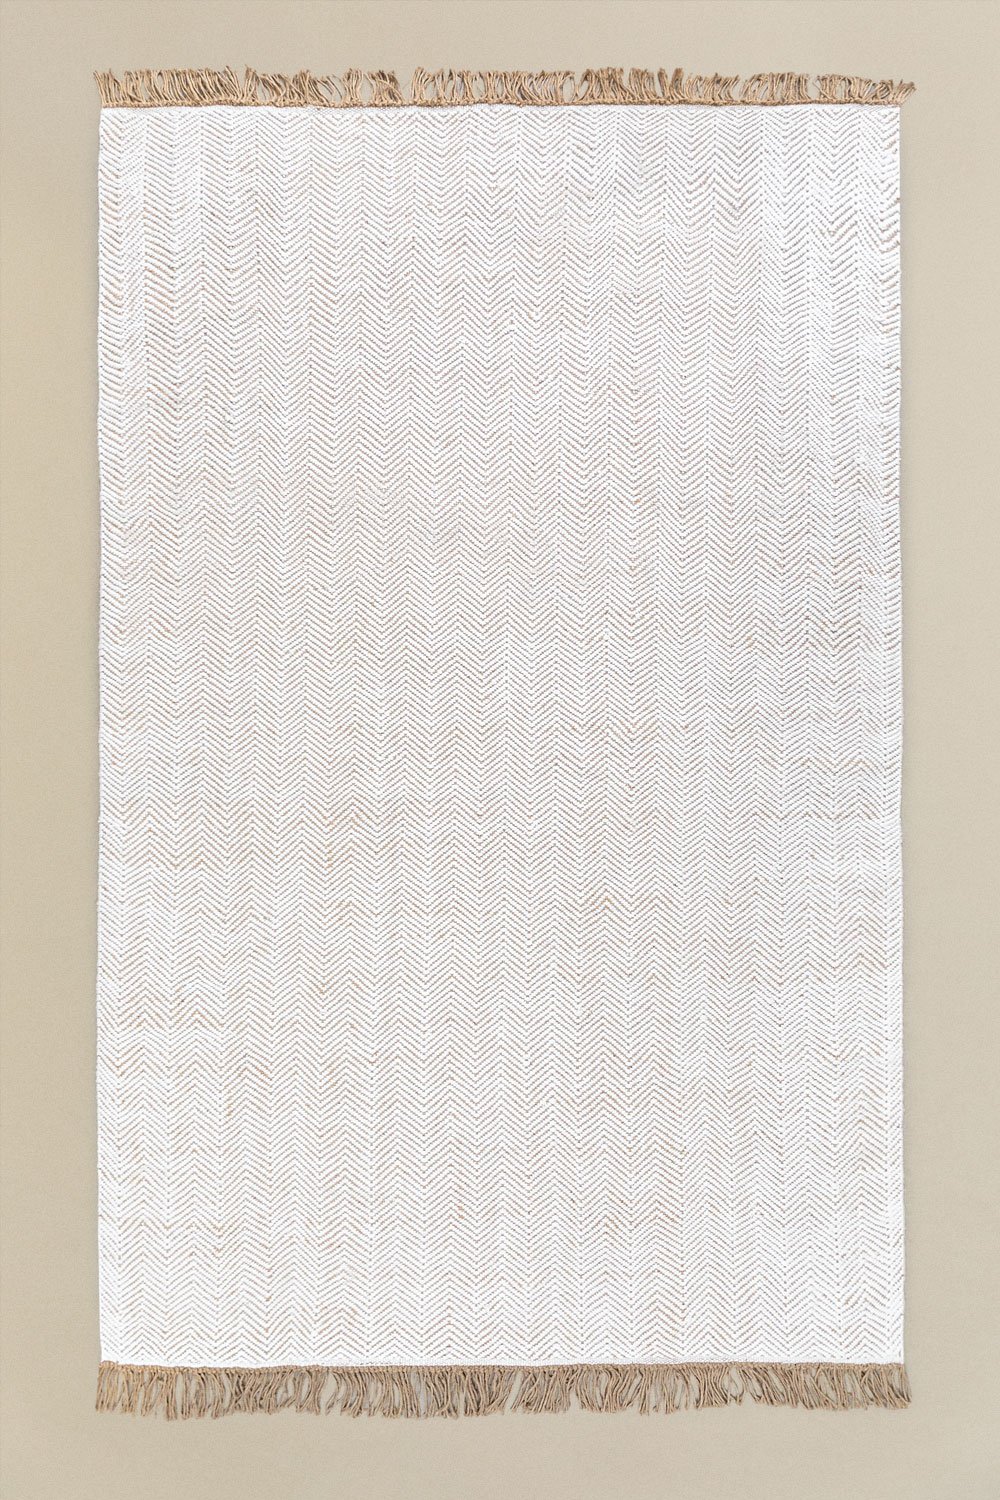 Jute vloerkleed (300x200 cm) Maxandra, galerij beeld 1